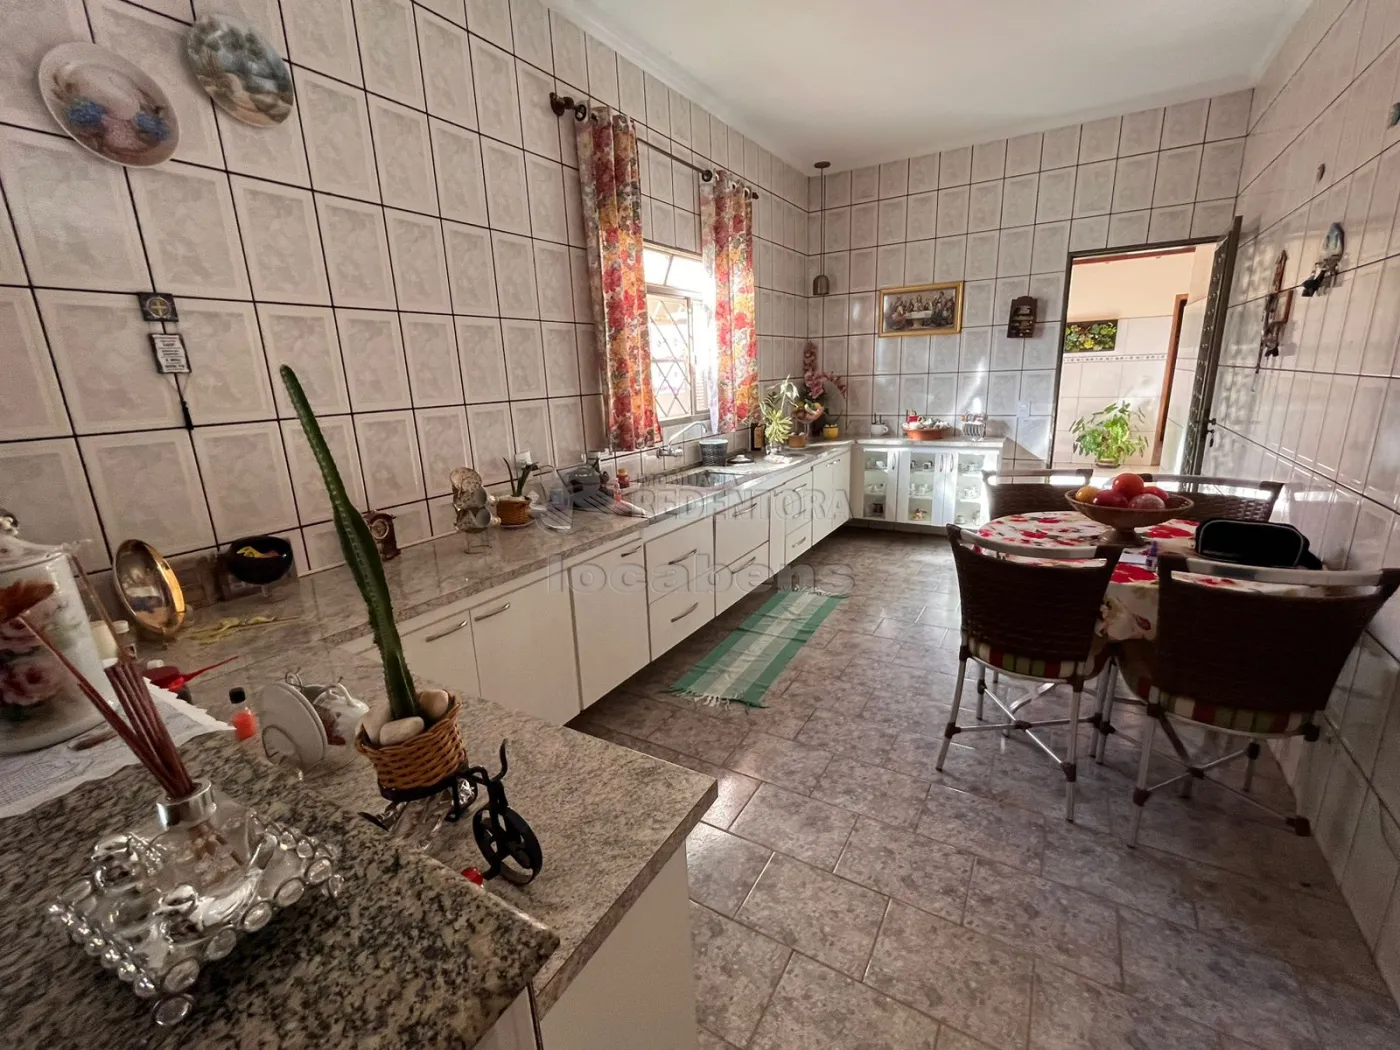 Comprar Casa / Padrão em São José do Rio Preto R$ 650.000,00 - Foto 13